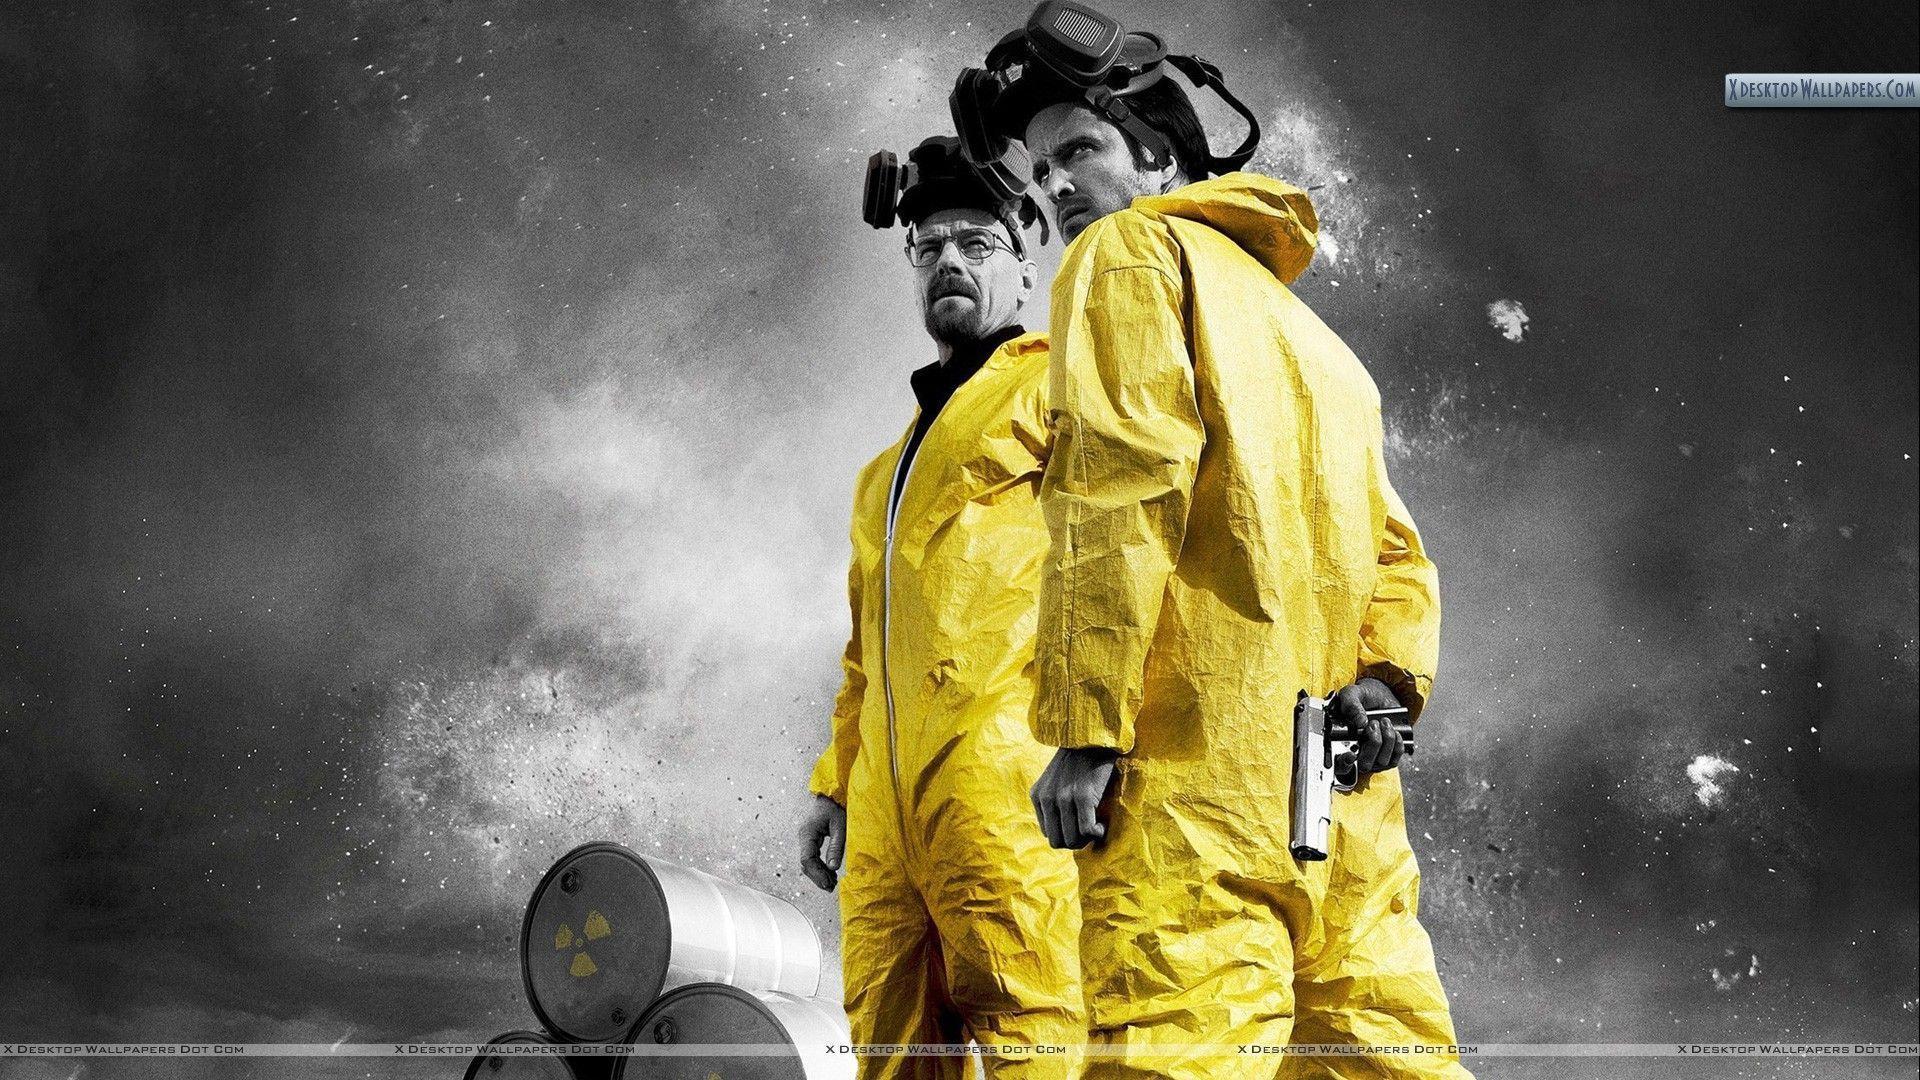 Bryan Cranston & Aaron Paul In Yellow Dress In Breaking Bad Wallpaper